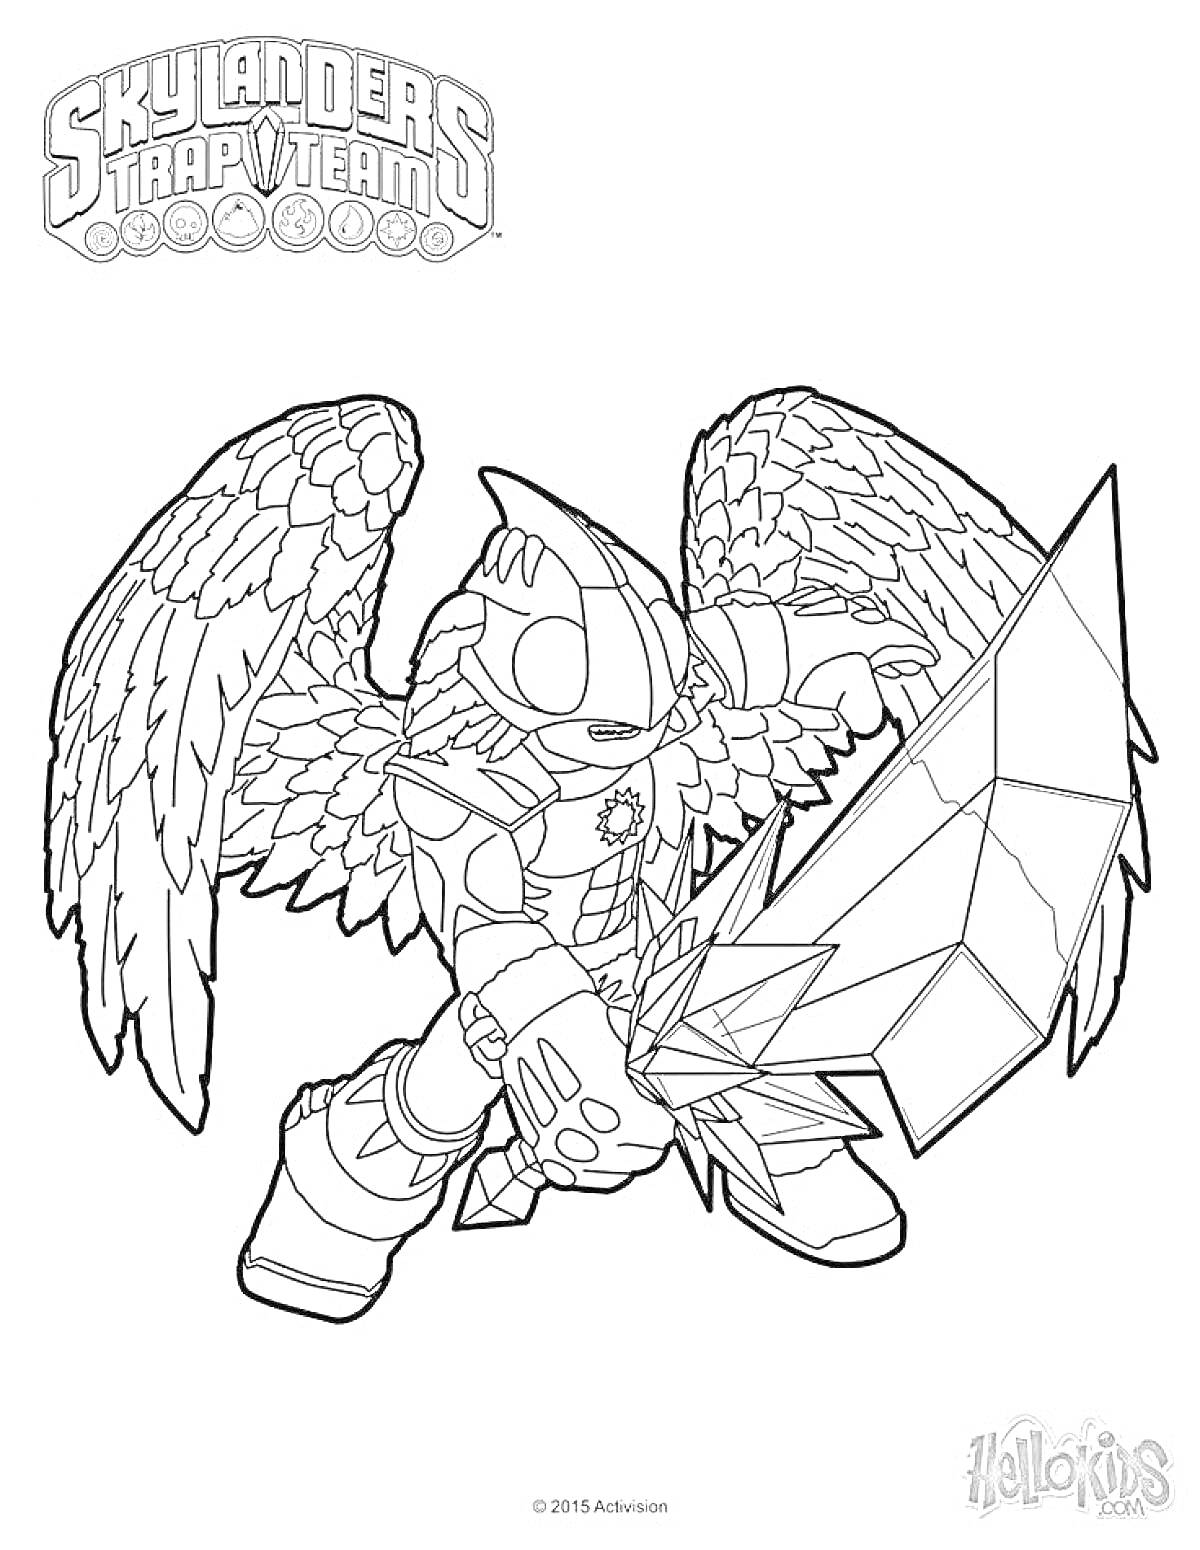 Раскраска Раскраска Skylanders Trap Team с персонажем в доспехах и крыльями с гигантским мечом